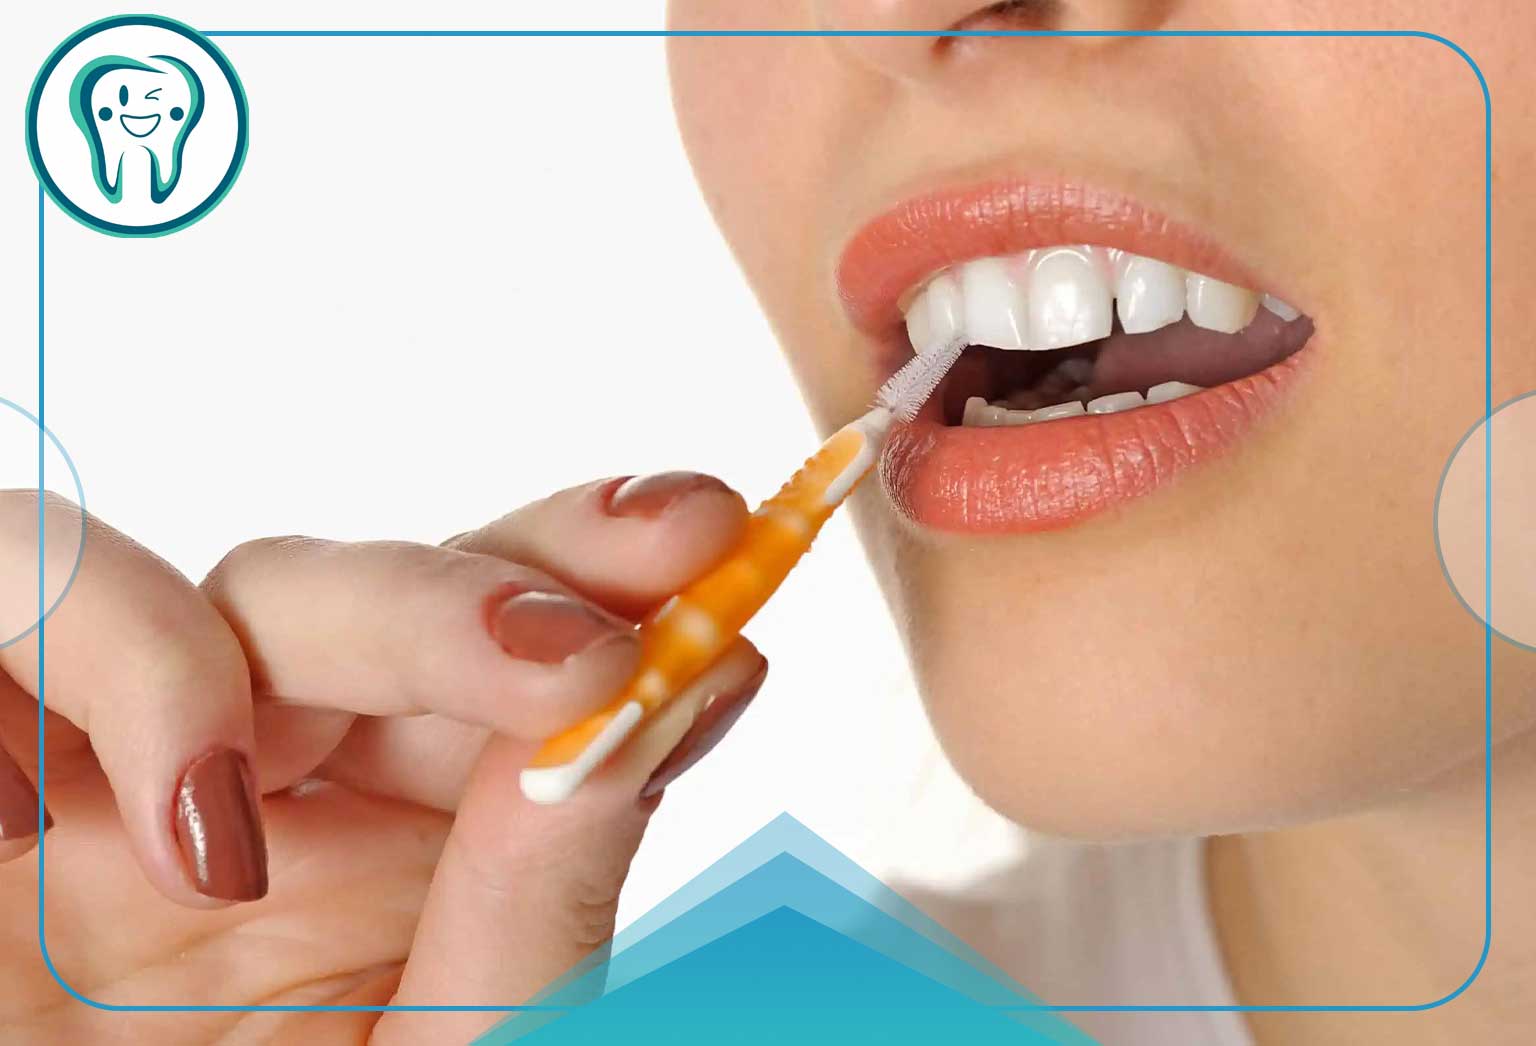 بهداشت دهان کامل با مسواک بین دندانی